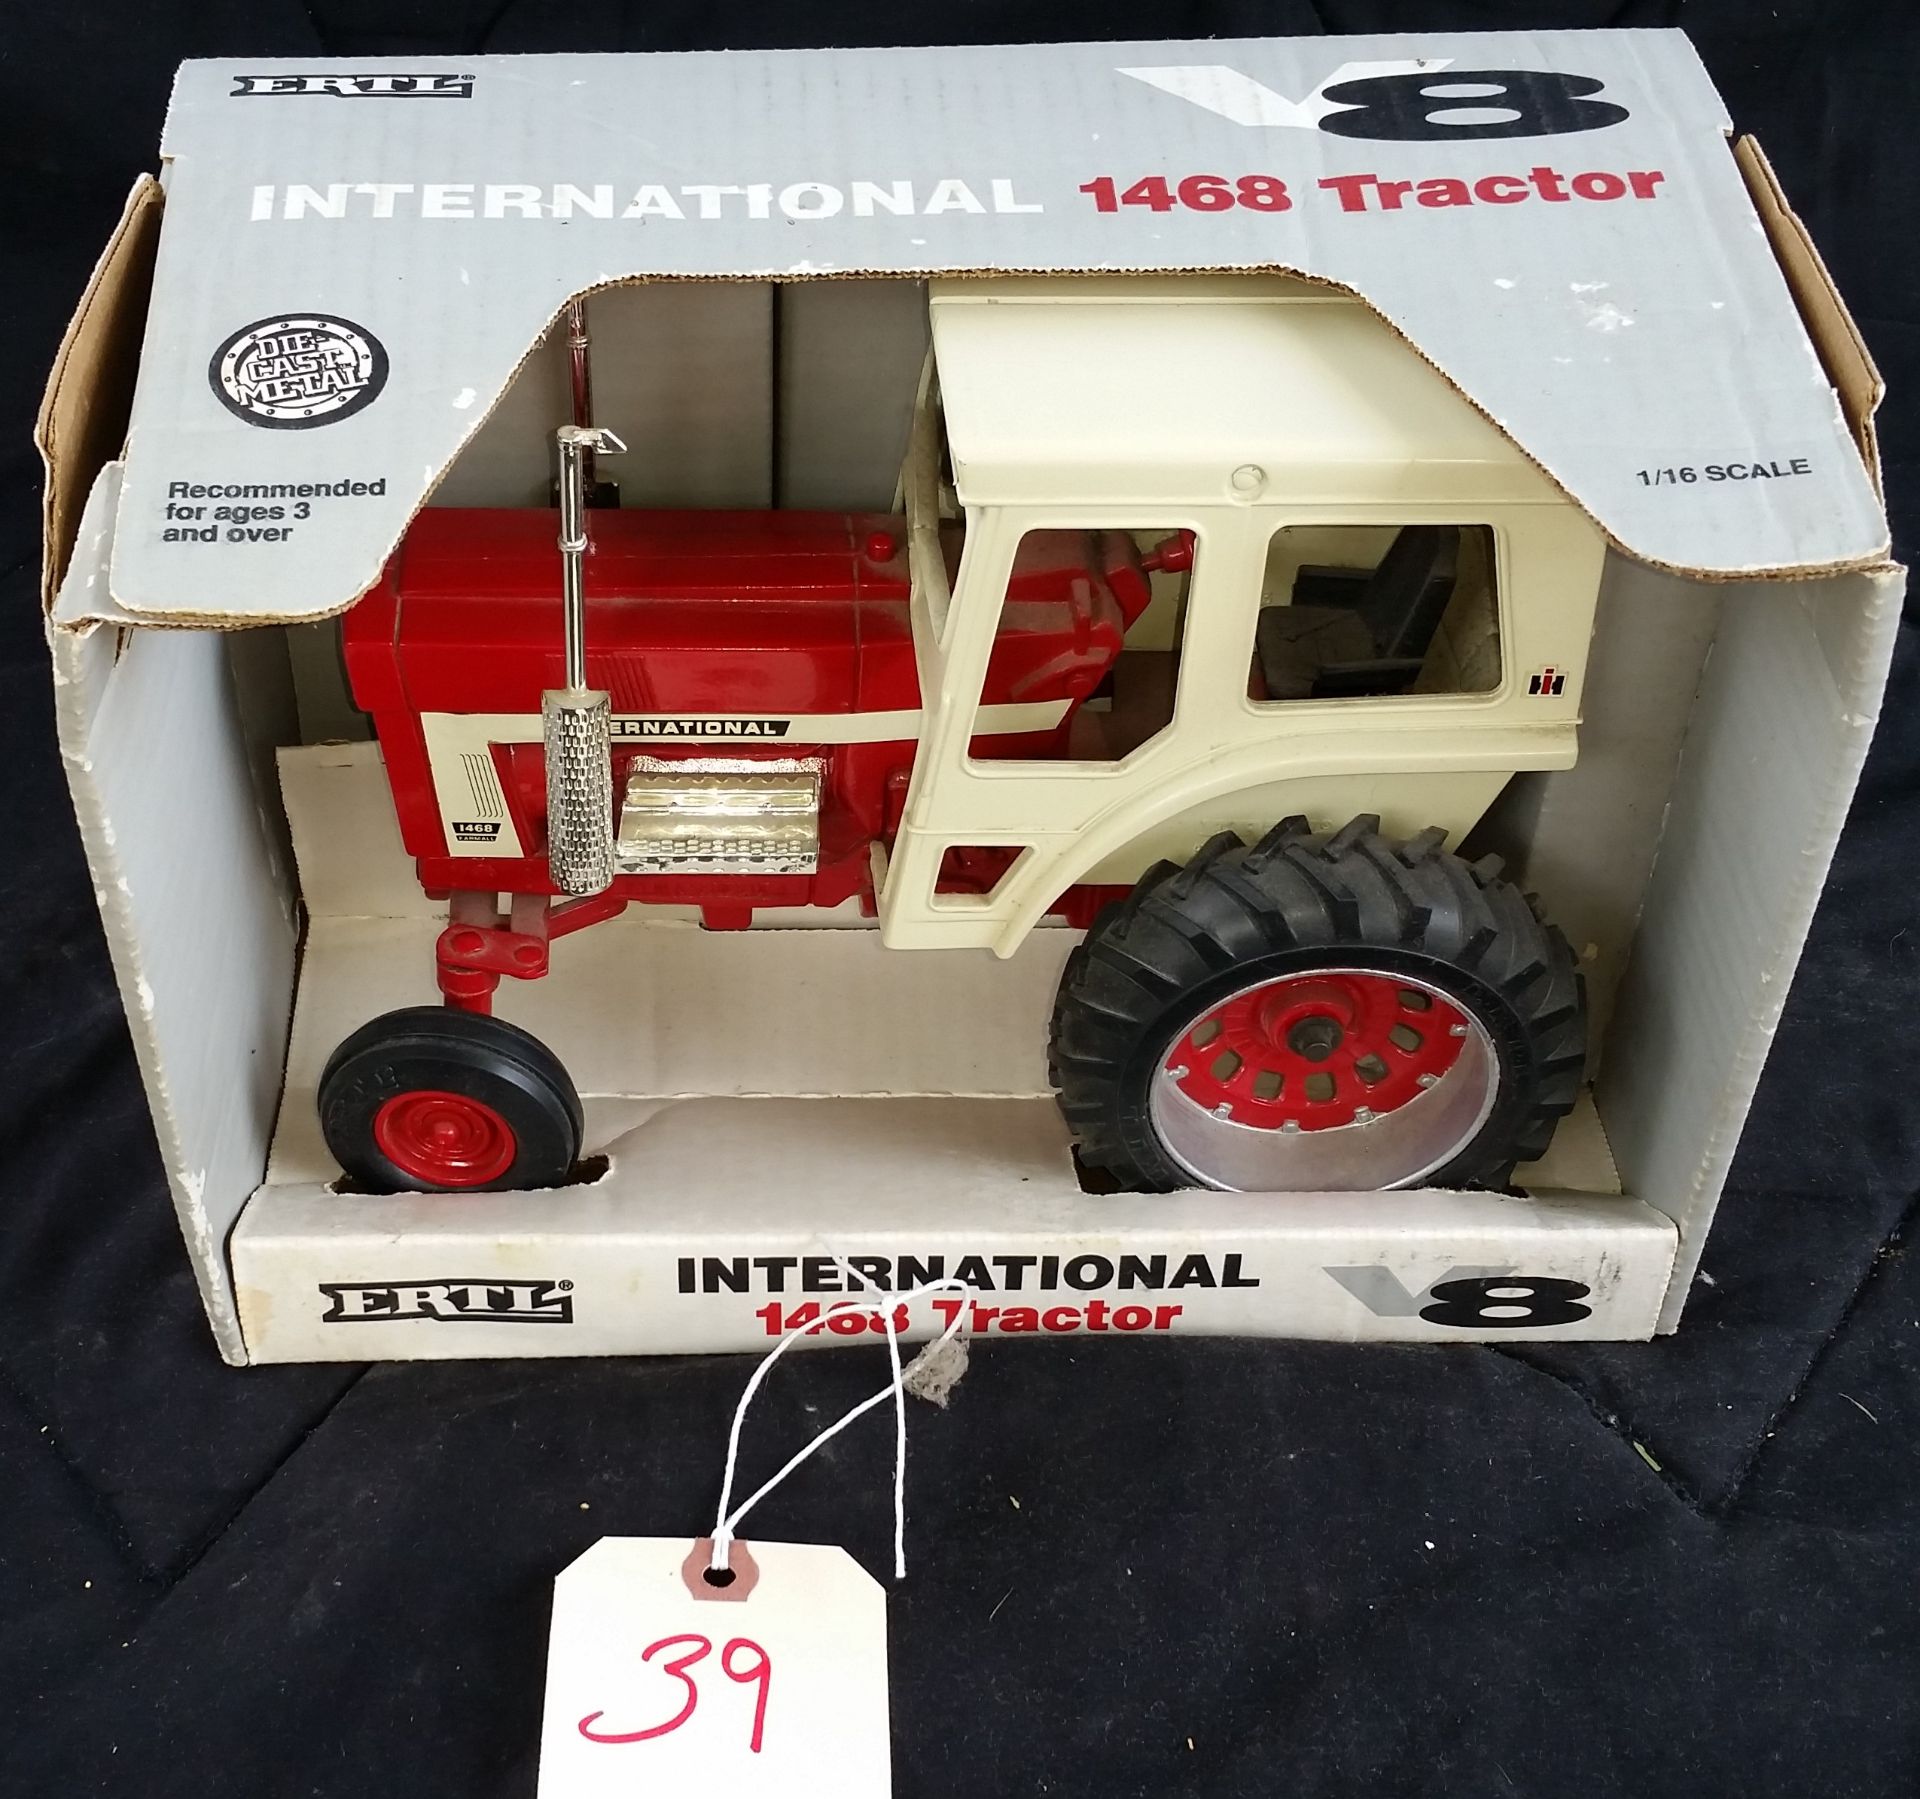 International 1468 Tractor V8 Series